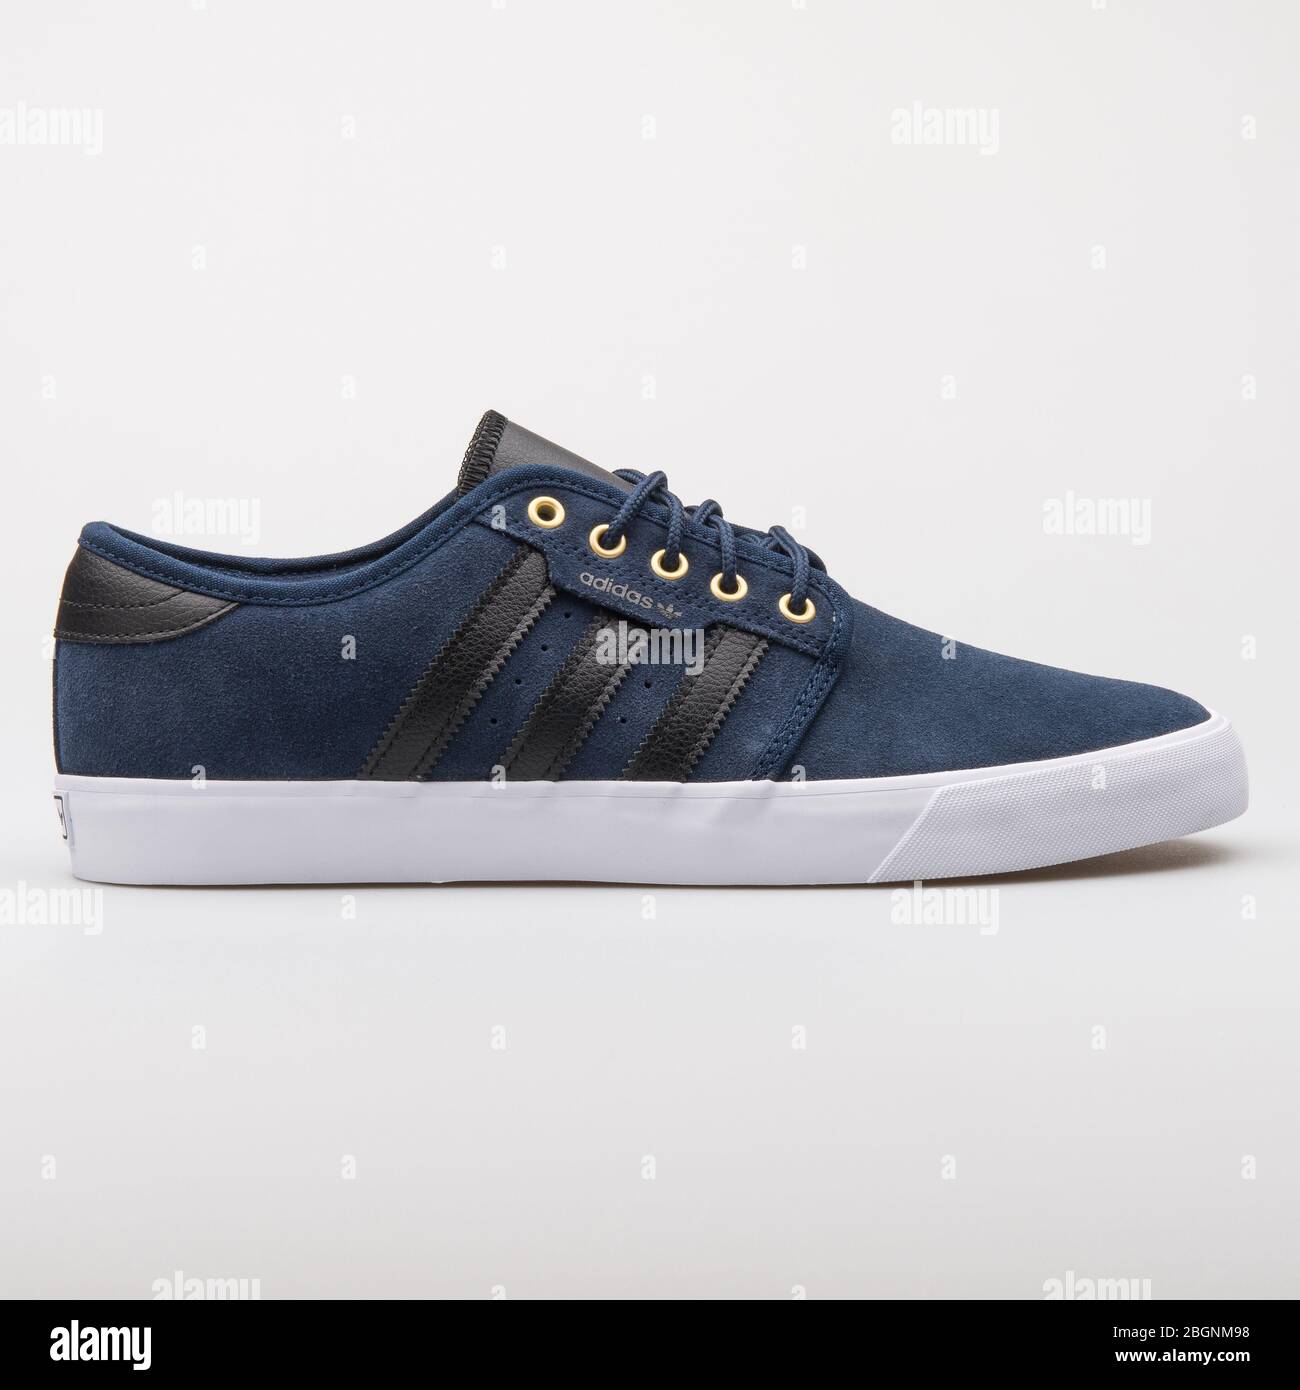 Adidas shoes blue and black fotografías e imágenes alta resolución Página 2 -